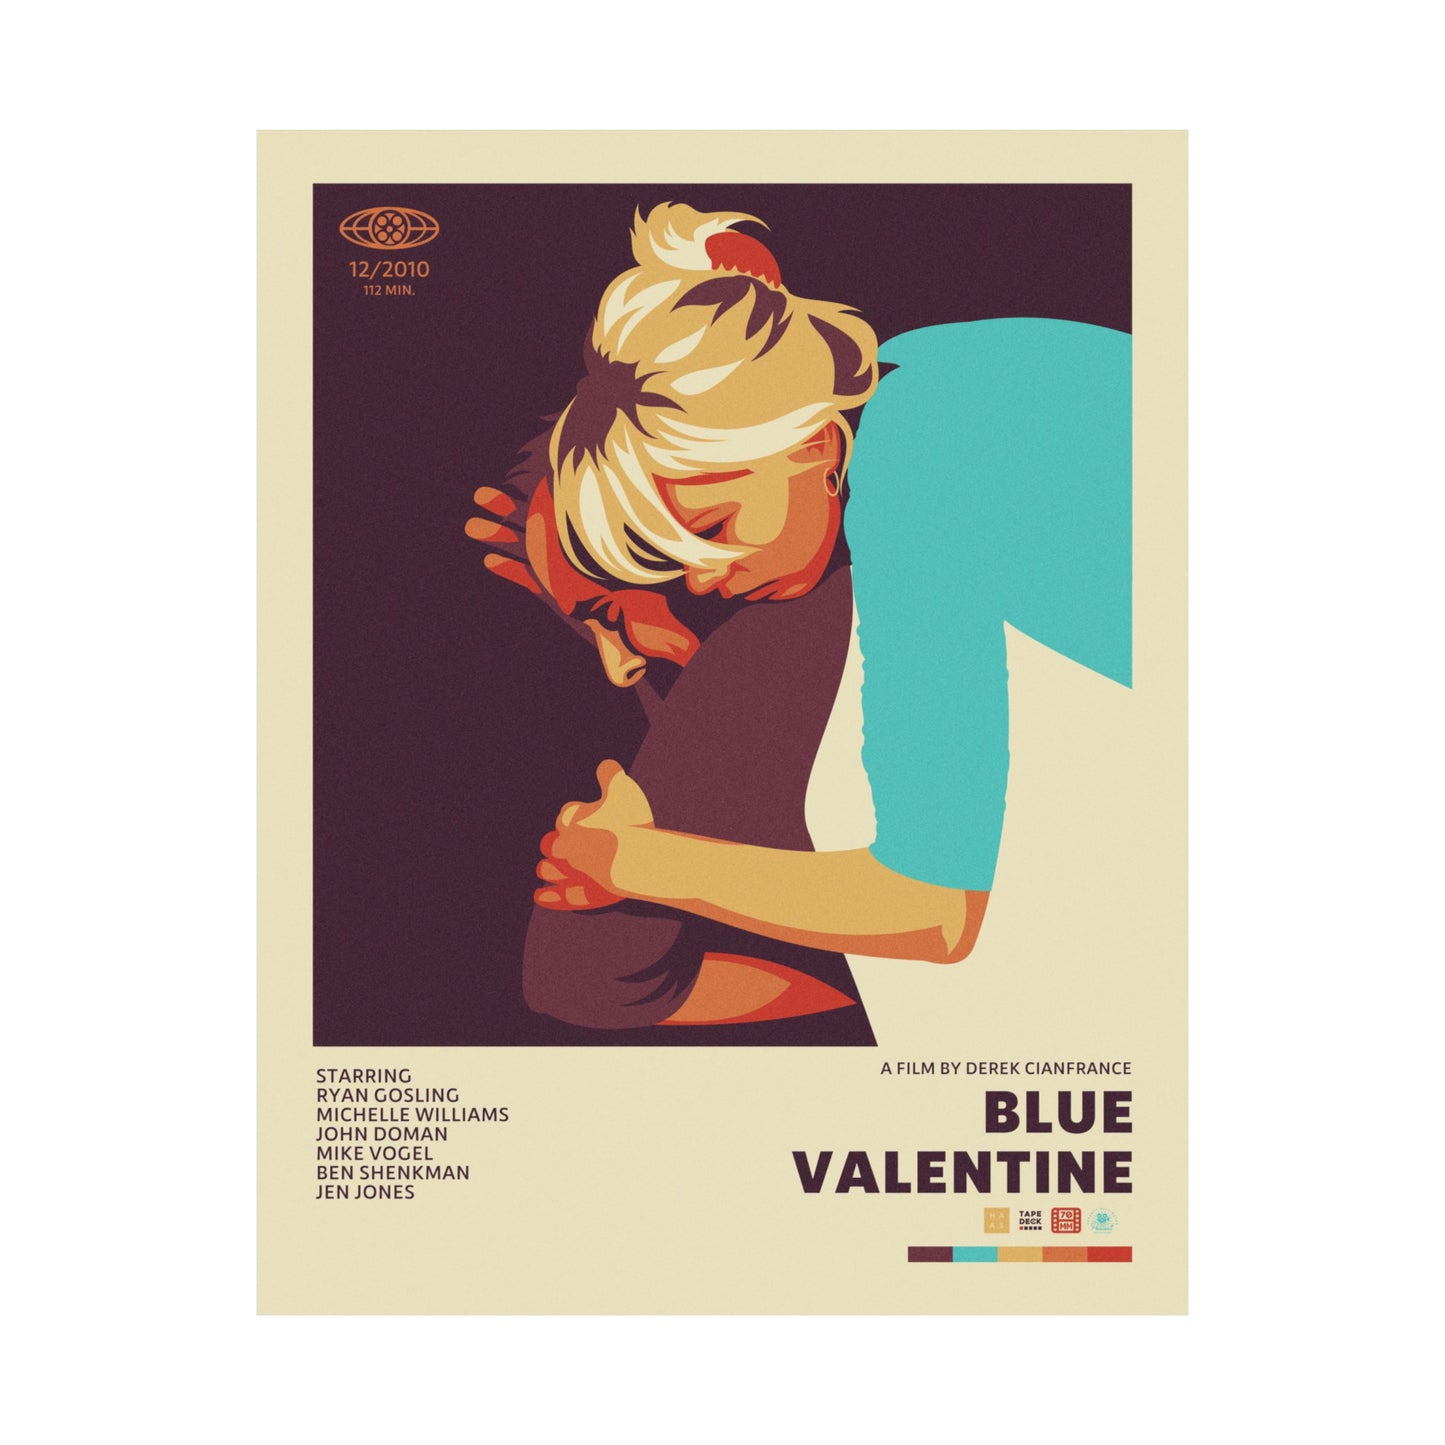 Bonus Episode: Blue Valentine